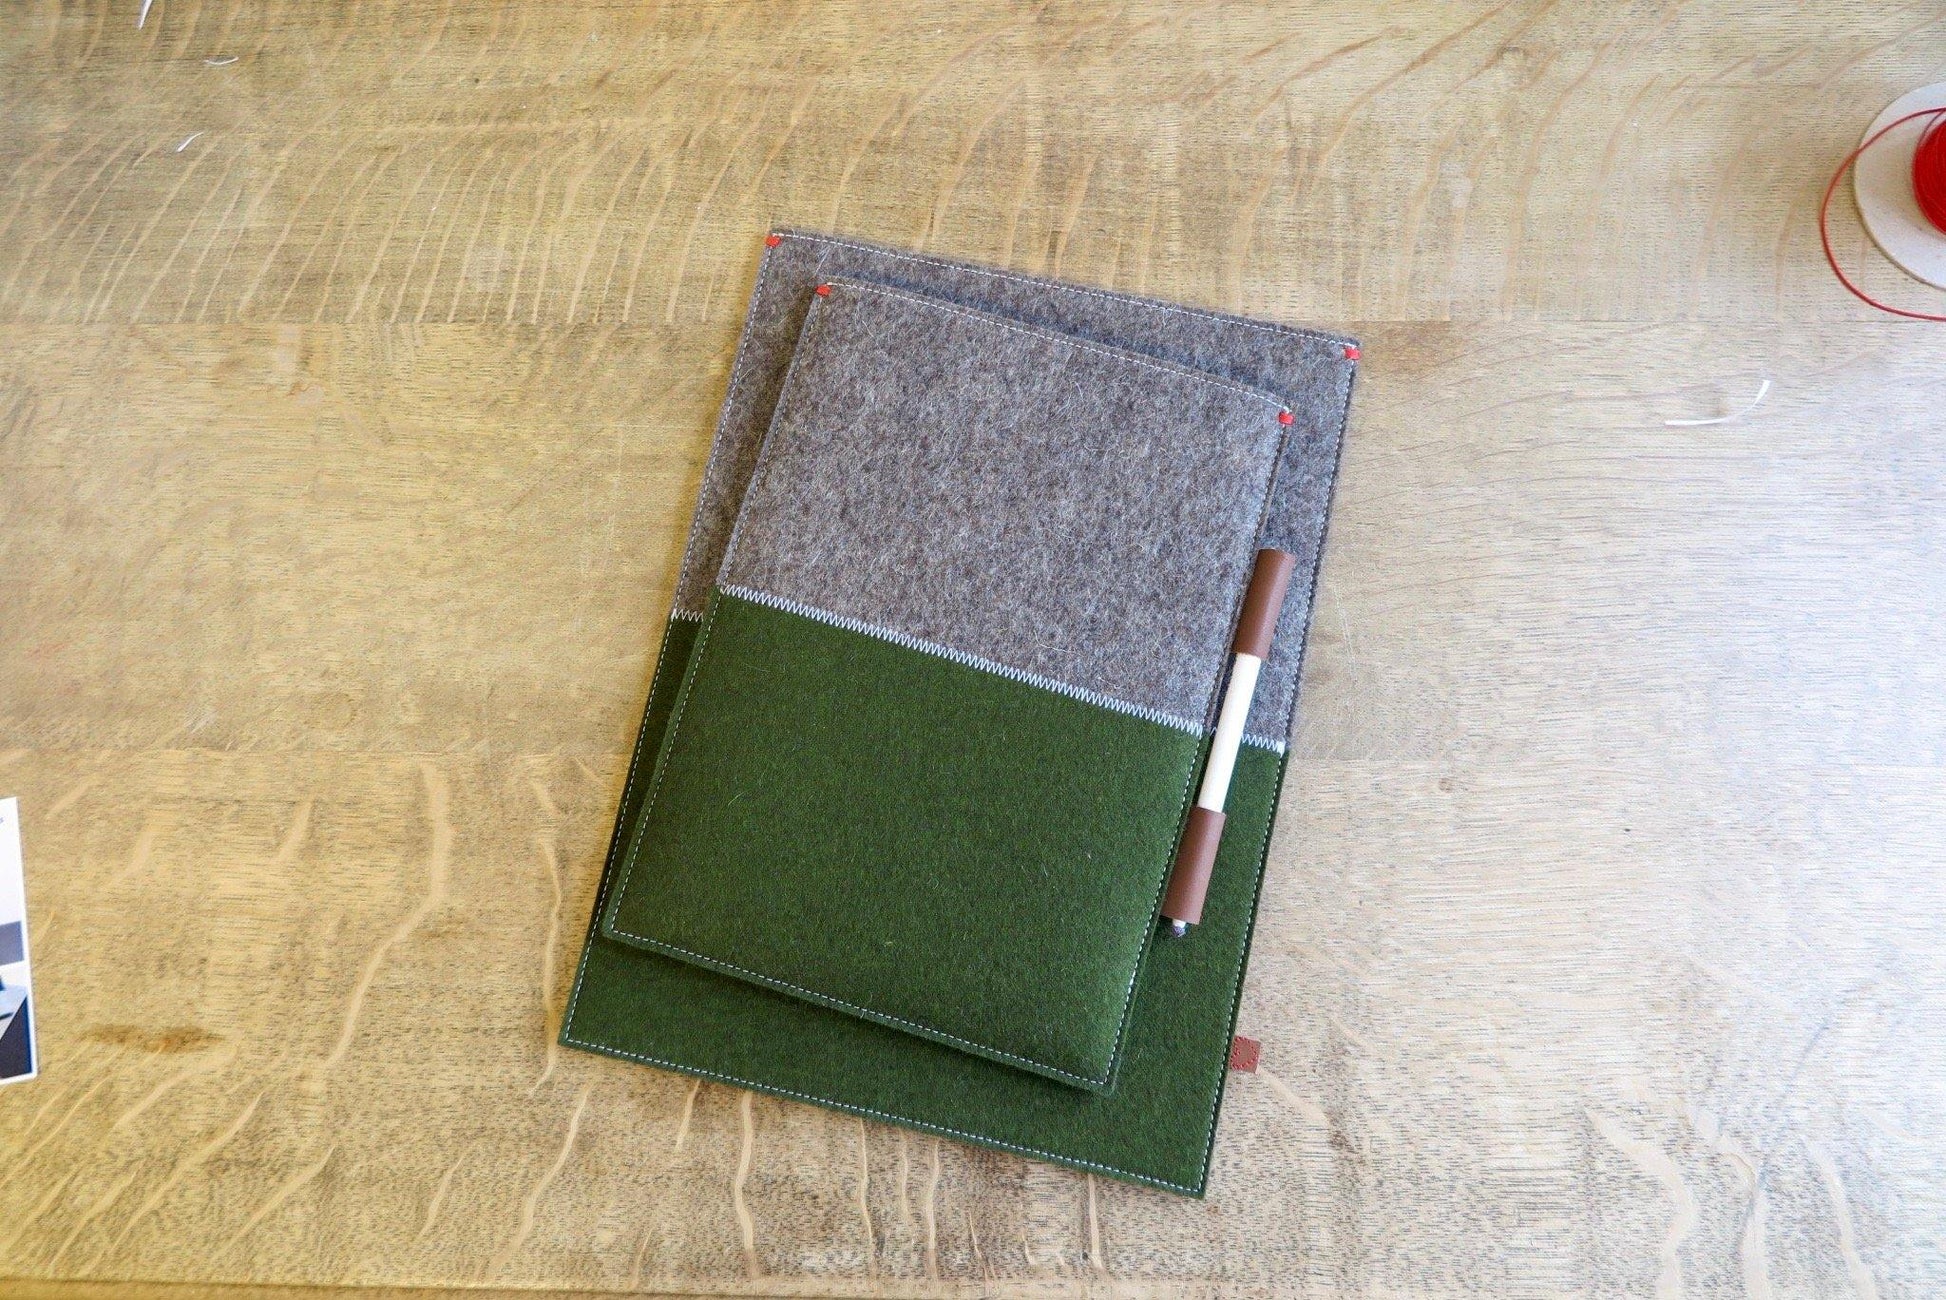 CONTRAST serie - iPad Pro hoes in Classic Green - Westerman Bags vilten tassen en hoezen. Dutch Design.